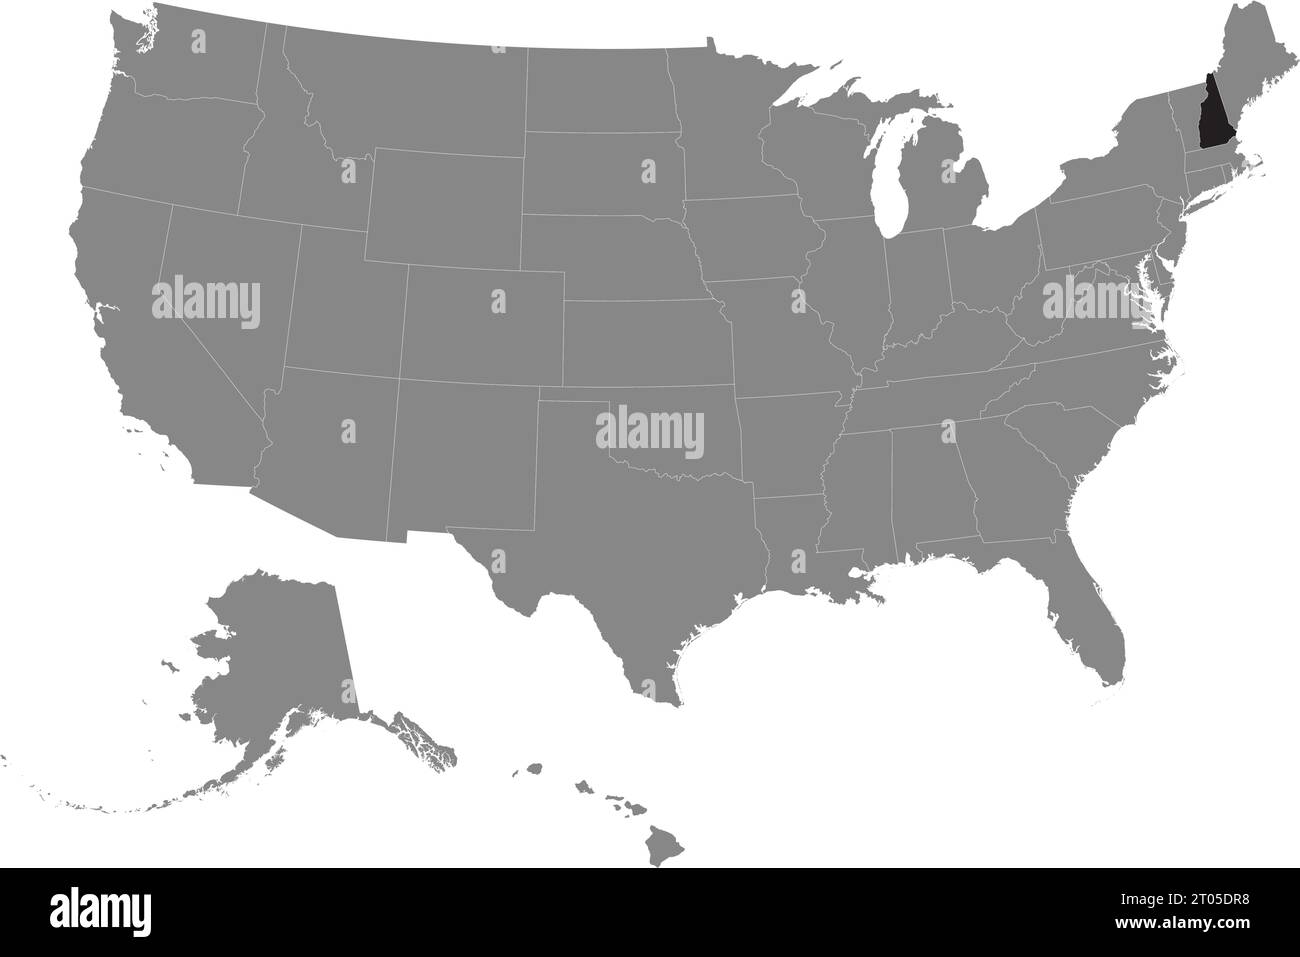 Schwarze CMYK-Bundeskarte von NEW HAMPSHIRE in detaillierter grauer, leerer politischer Karte der Vereinigten Staaten von Amerika auf transparentem Hintergrund Stock Vektor